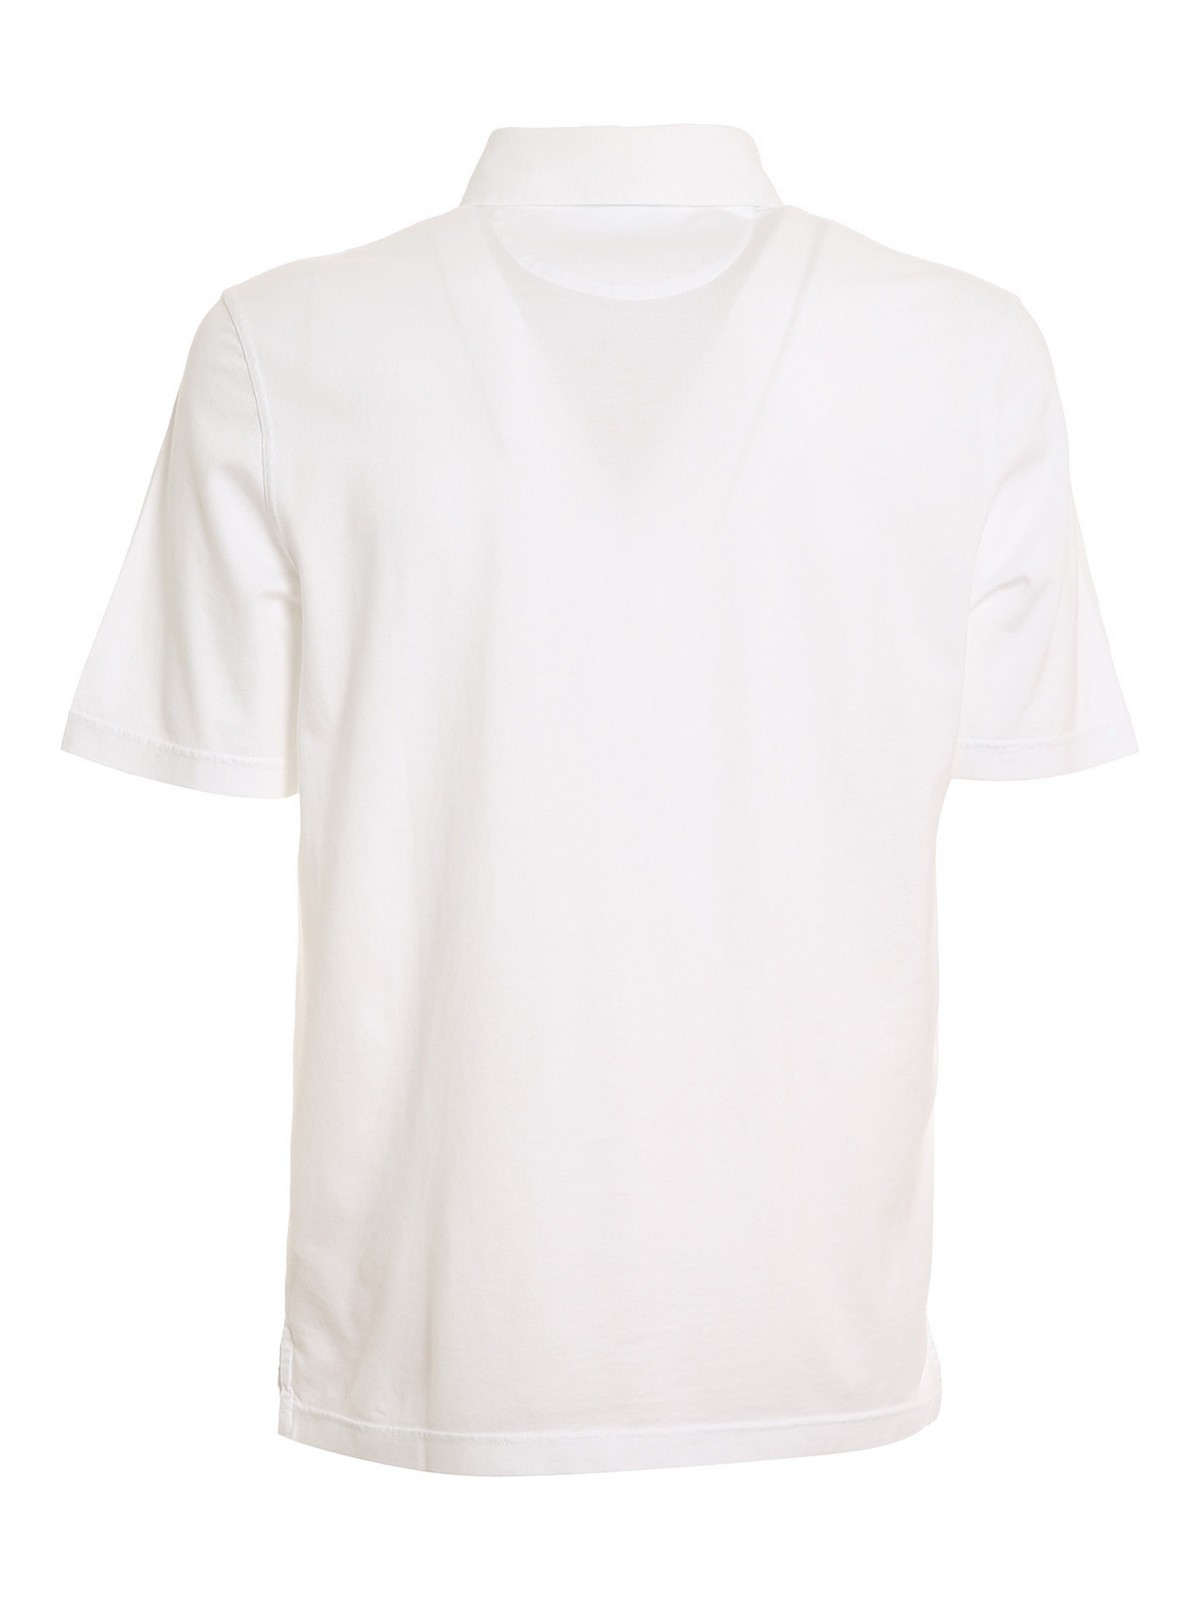 Polo shirts Fedeli - Supima cotton polo shirt - 5UED0248H41 | iKRIX.com